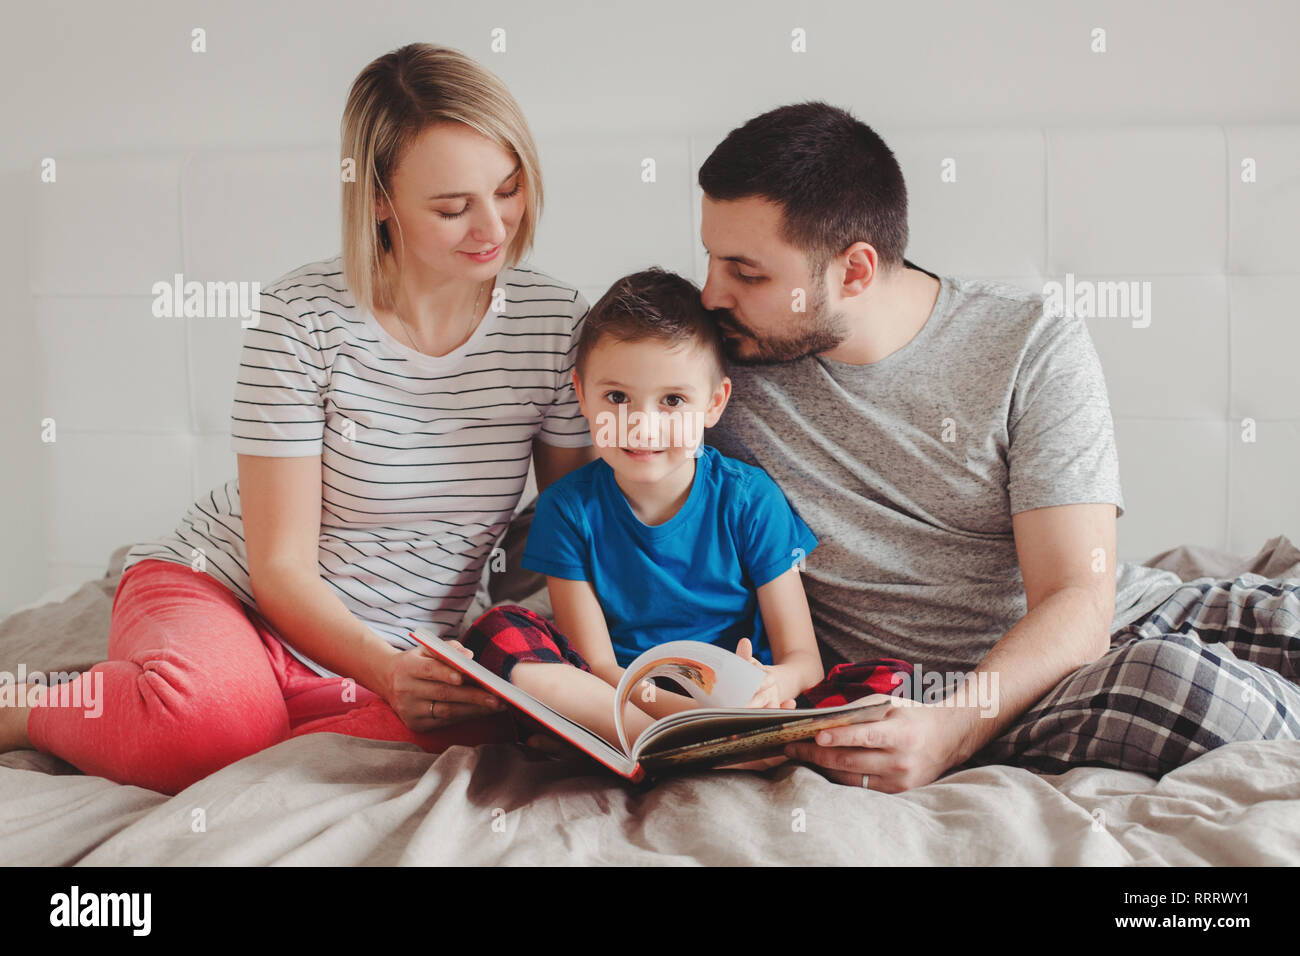 Familie von drei Personen auf dem Bett im Schlafzimmer lesen Buch sitzen.  Mutter, Vater und der Junge Sohn zu Hause Zeit miteinander zu verbringen.  Eltern sprechen, kommunizieren Stockfotografie - Alamy